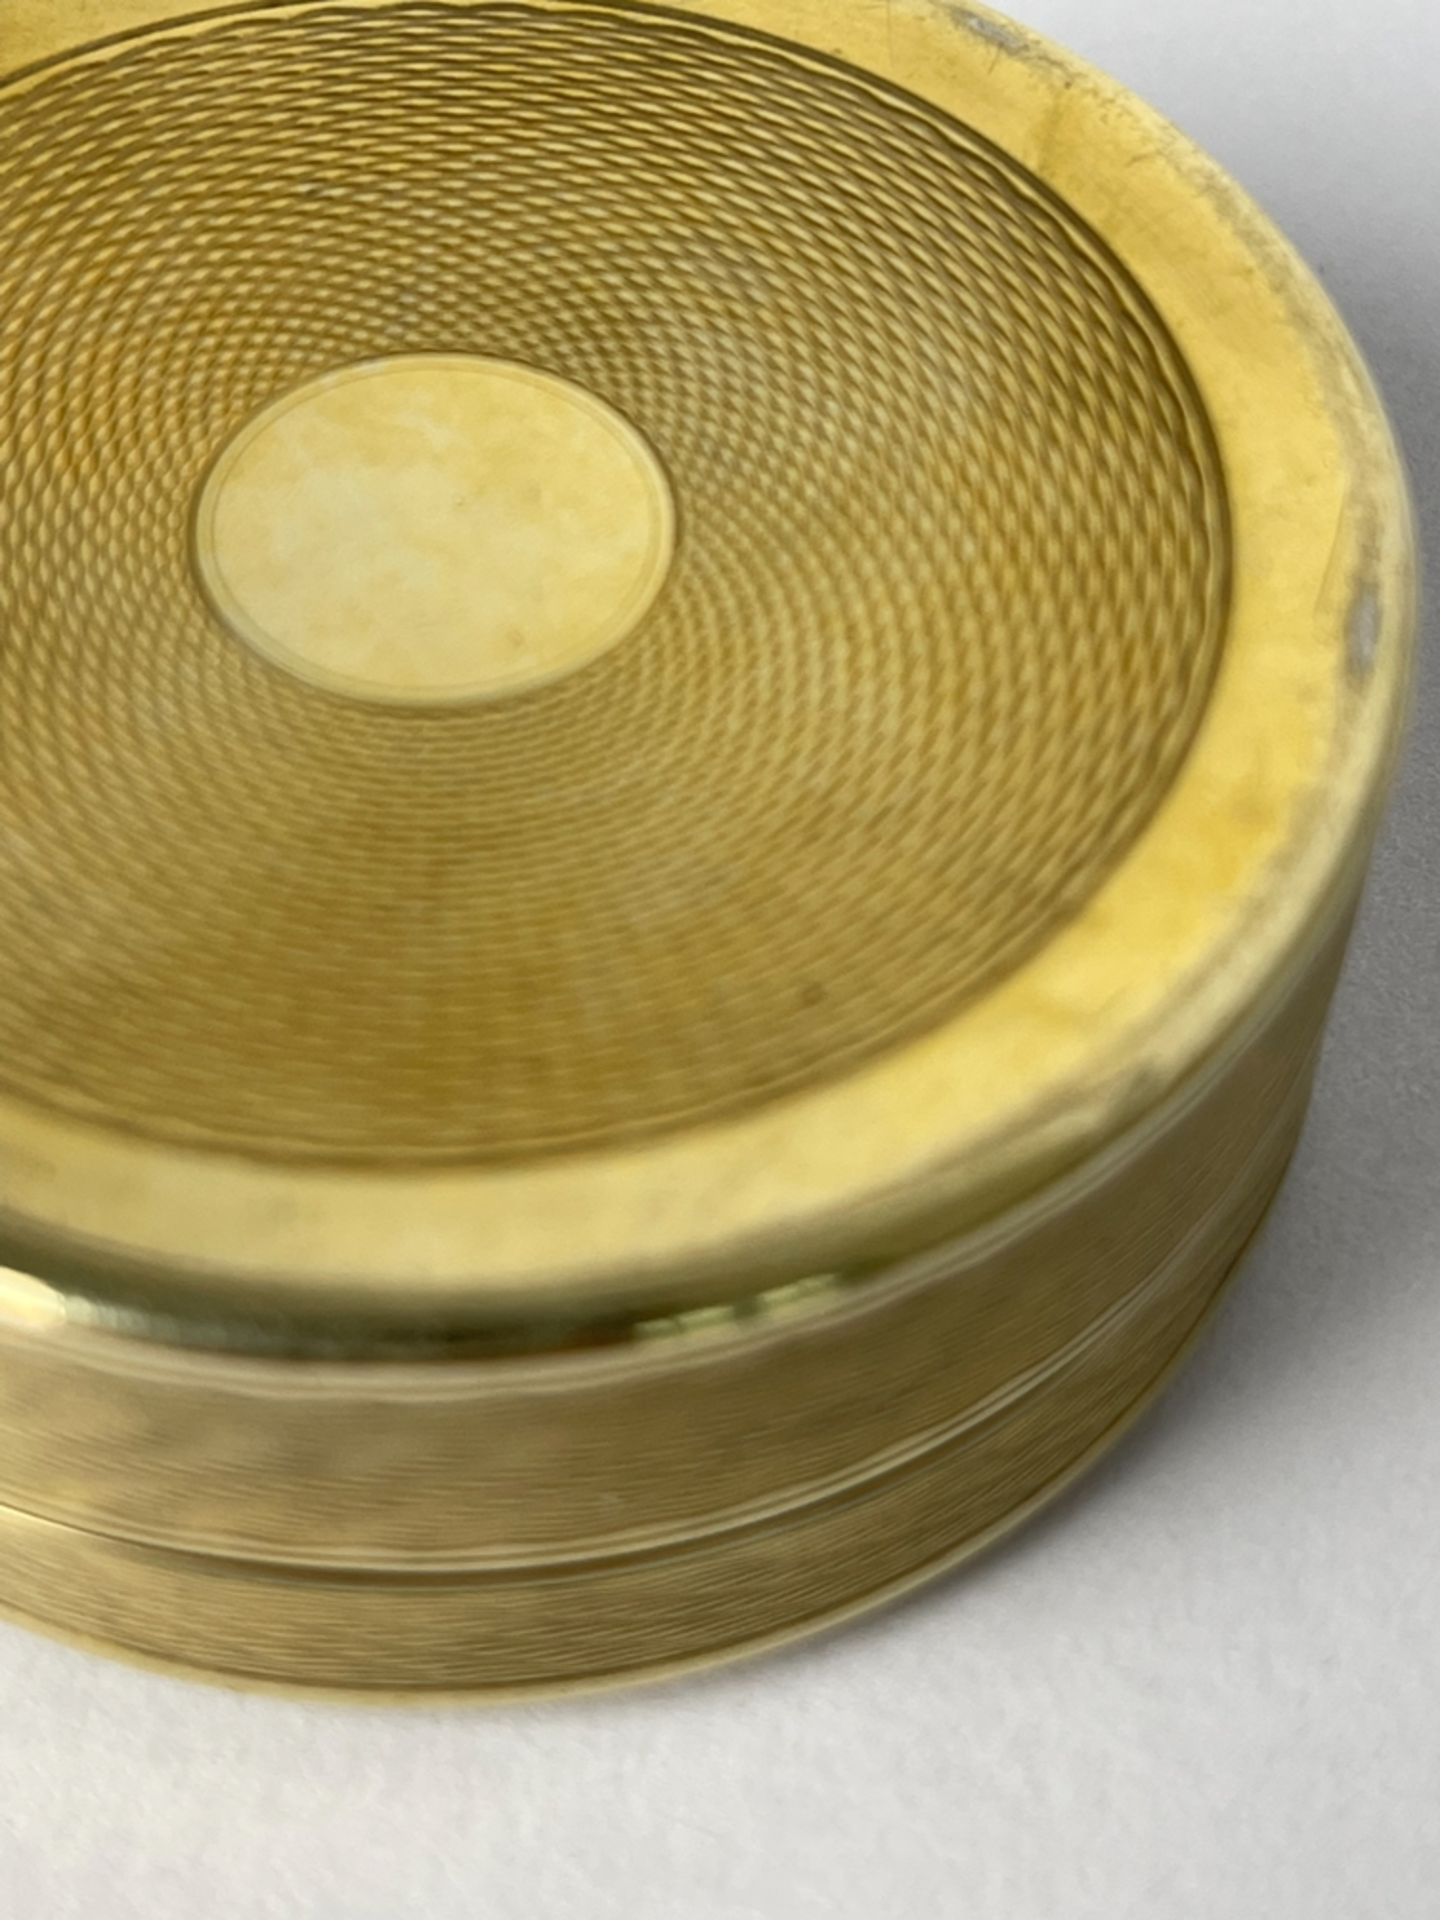 Hochwertige feinst gravierte vergoldete Silberdose - Image 5 of 7